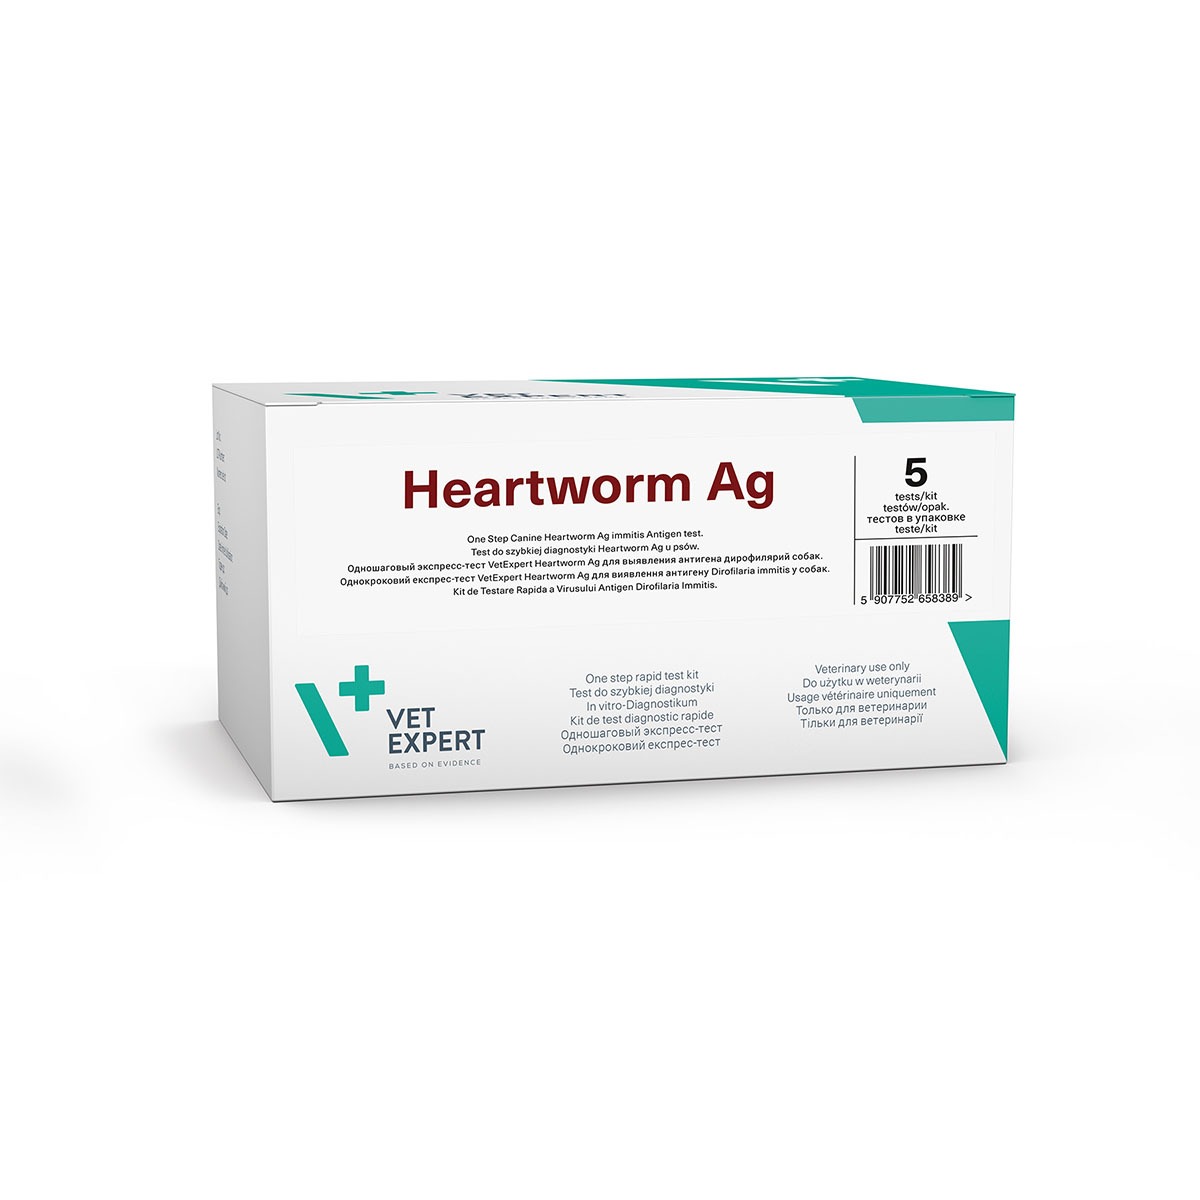 VetExpert Heartworm Ag Schnelltest Diagnostik Schnelle diagnostische Tests für Diagnose einer Infektionskrankheit Infektionen Tierarztbedarf, Veterinärbedarf, Veterinärmedizin, Praxisbedarf, Ergänzungsfuttermittel, Tierarztprodukten, Tierapotheke, Tierpflegeprodukte